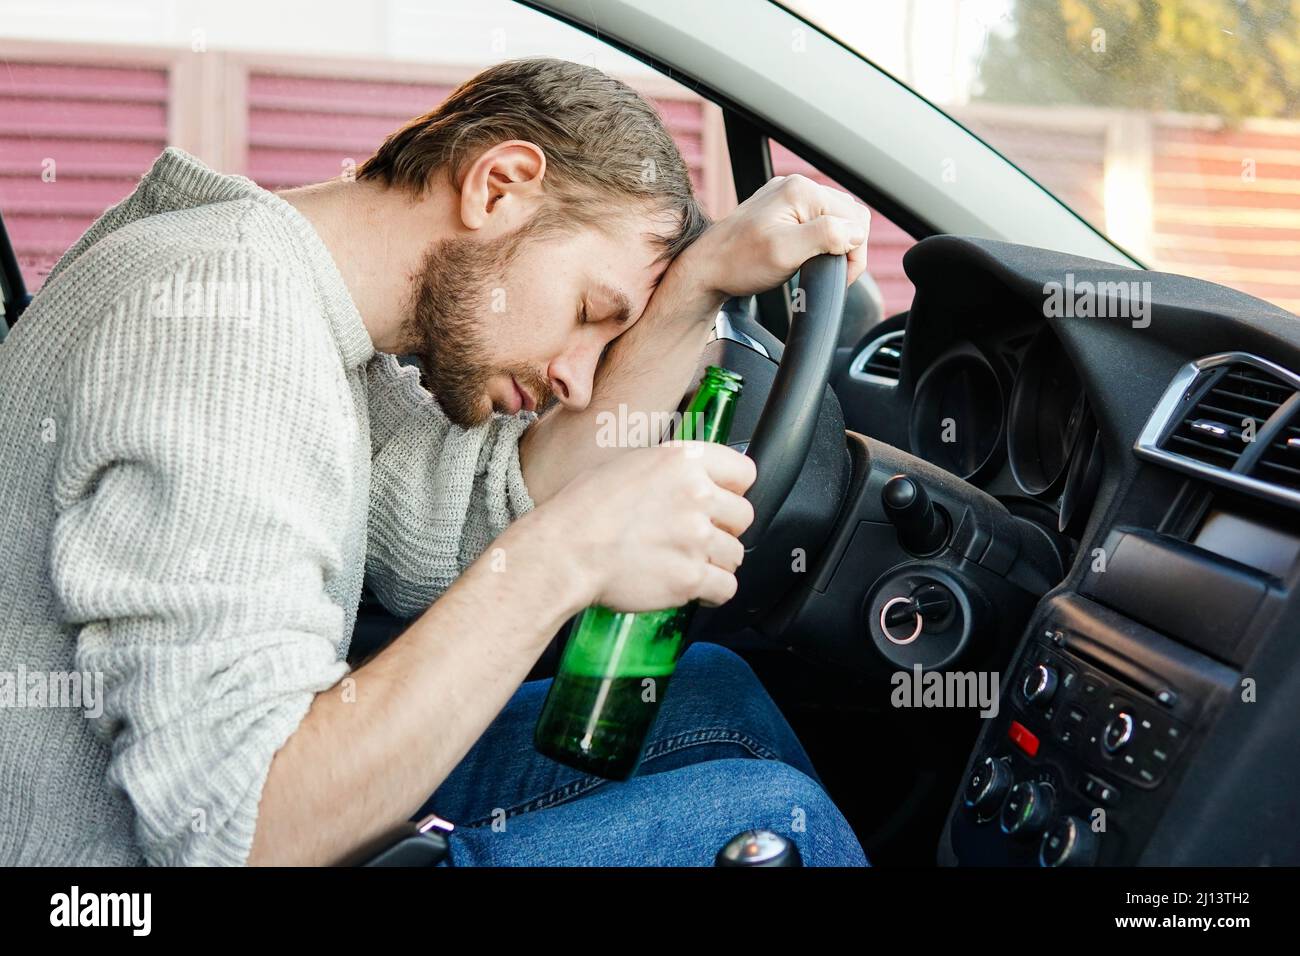 Ein junger betrunkener Mann schläft hinter dem Steuer eines Autos ein.  Männlicher Autofahrer mit einer Flasche Bier Stockfotografie - Alamy